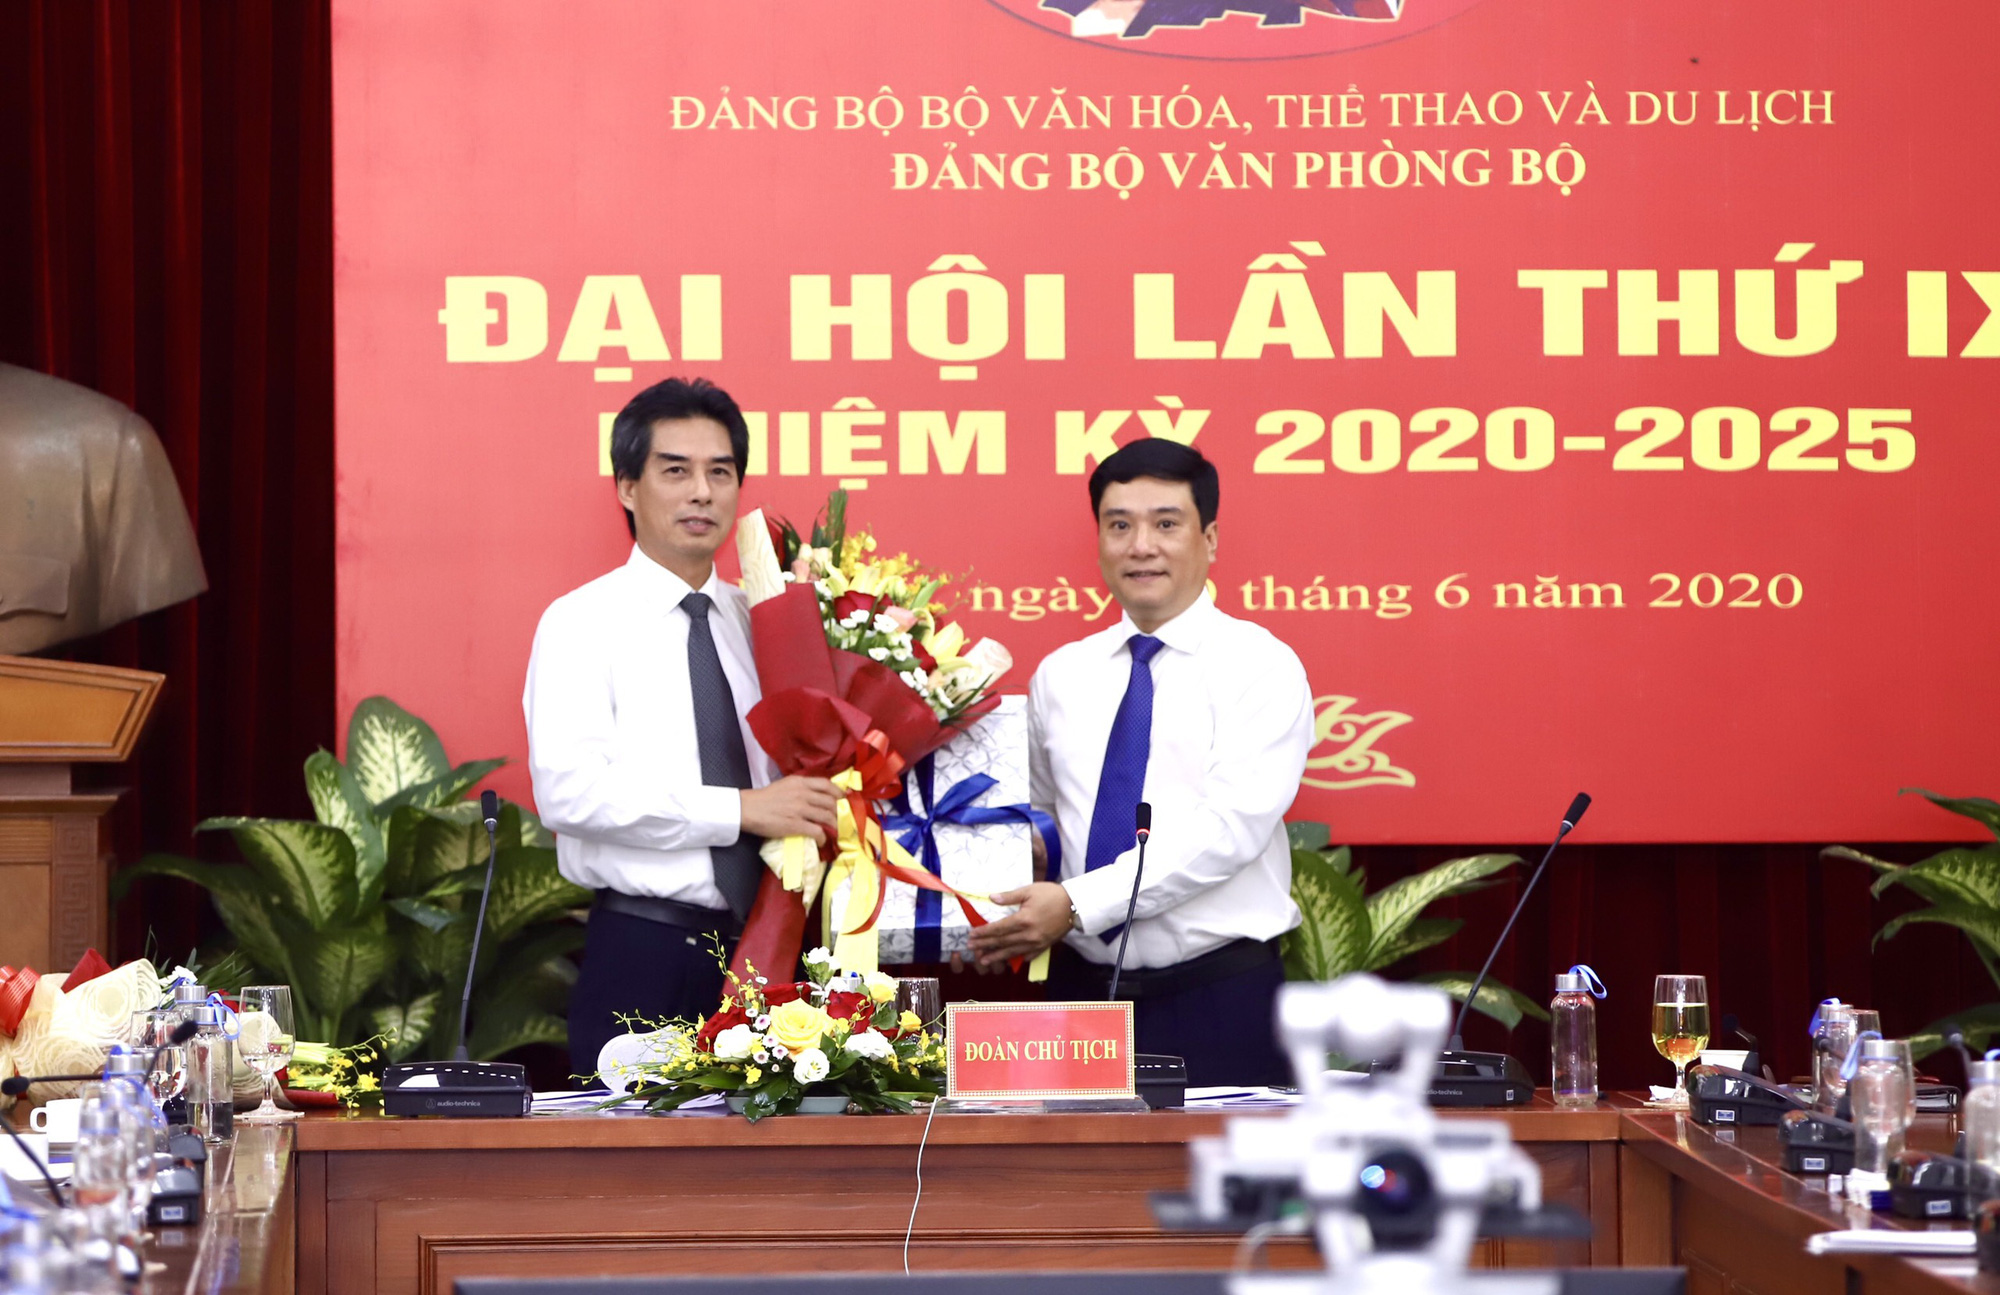  Ông Nguyễn Thái Bình tái đắc cử Bí thư Đảng ủy Văn phòng Bộ VHTTDL - Ảnh 6.